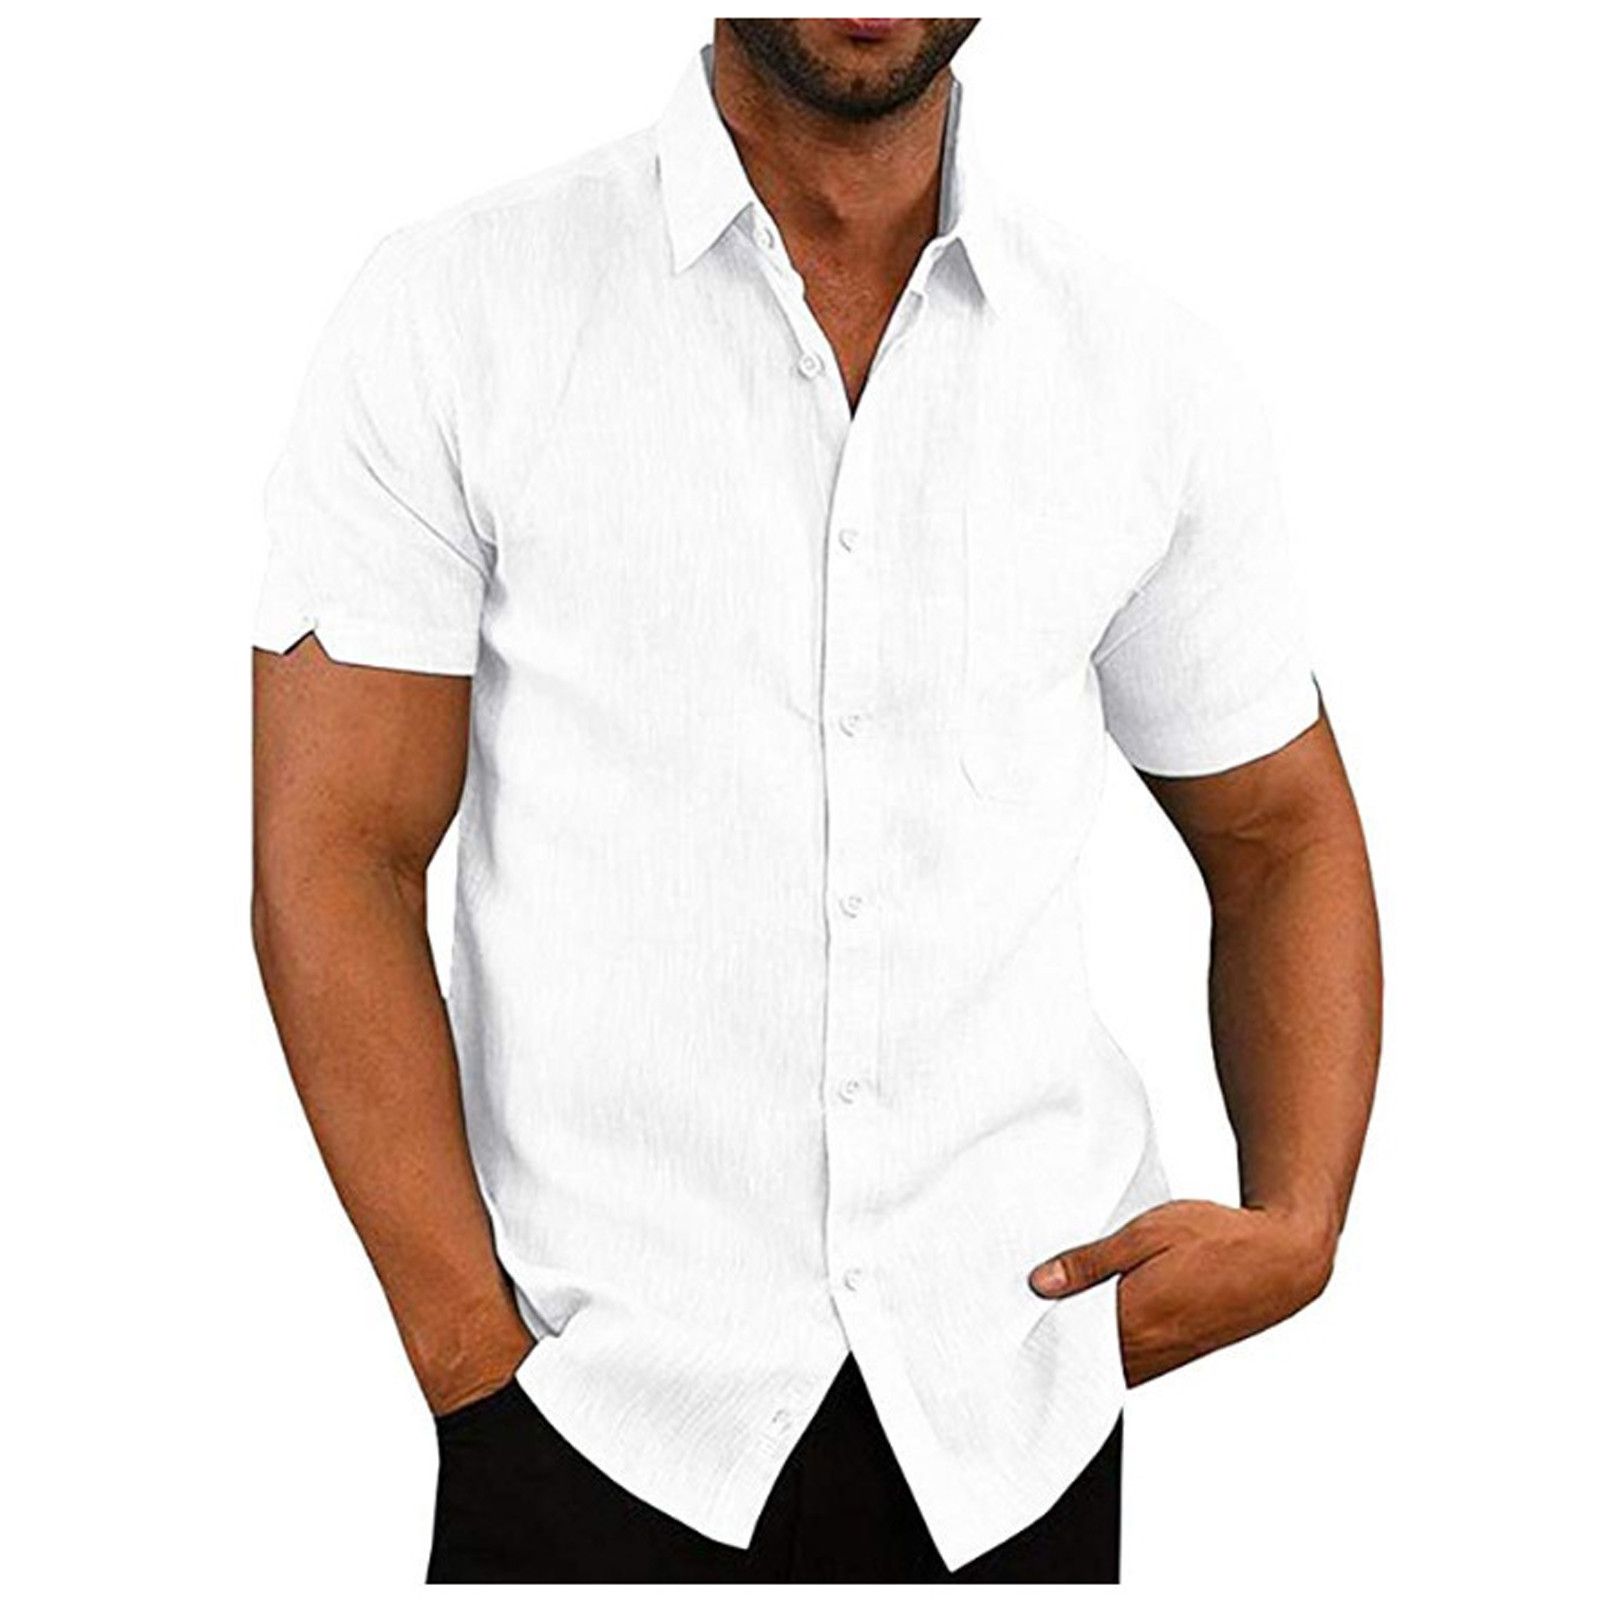 Купить летнюю рубашку мужскую с коротким рукавом. Рубашка Casual mujskie. Рубашка с коротким рукавом мужская. Летние рубашки мужские с короткими рукавами. Льняная рубашка мужская.